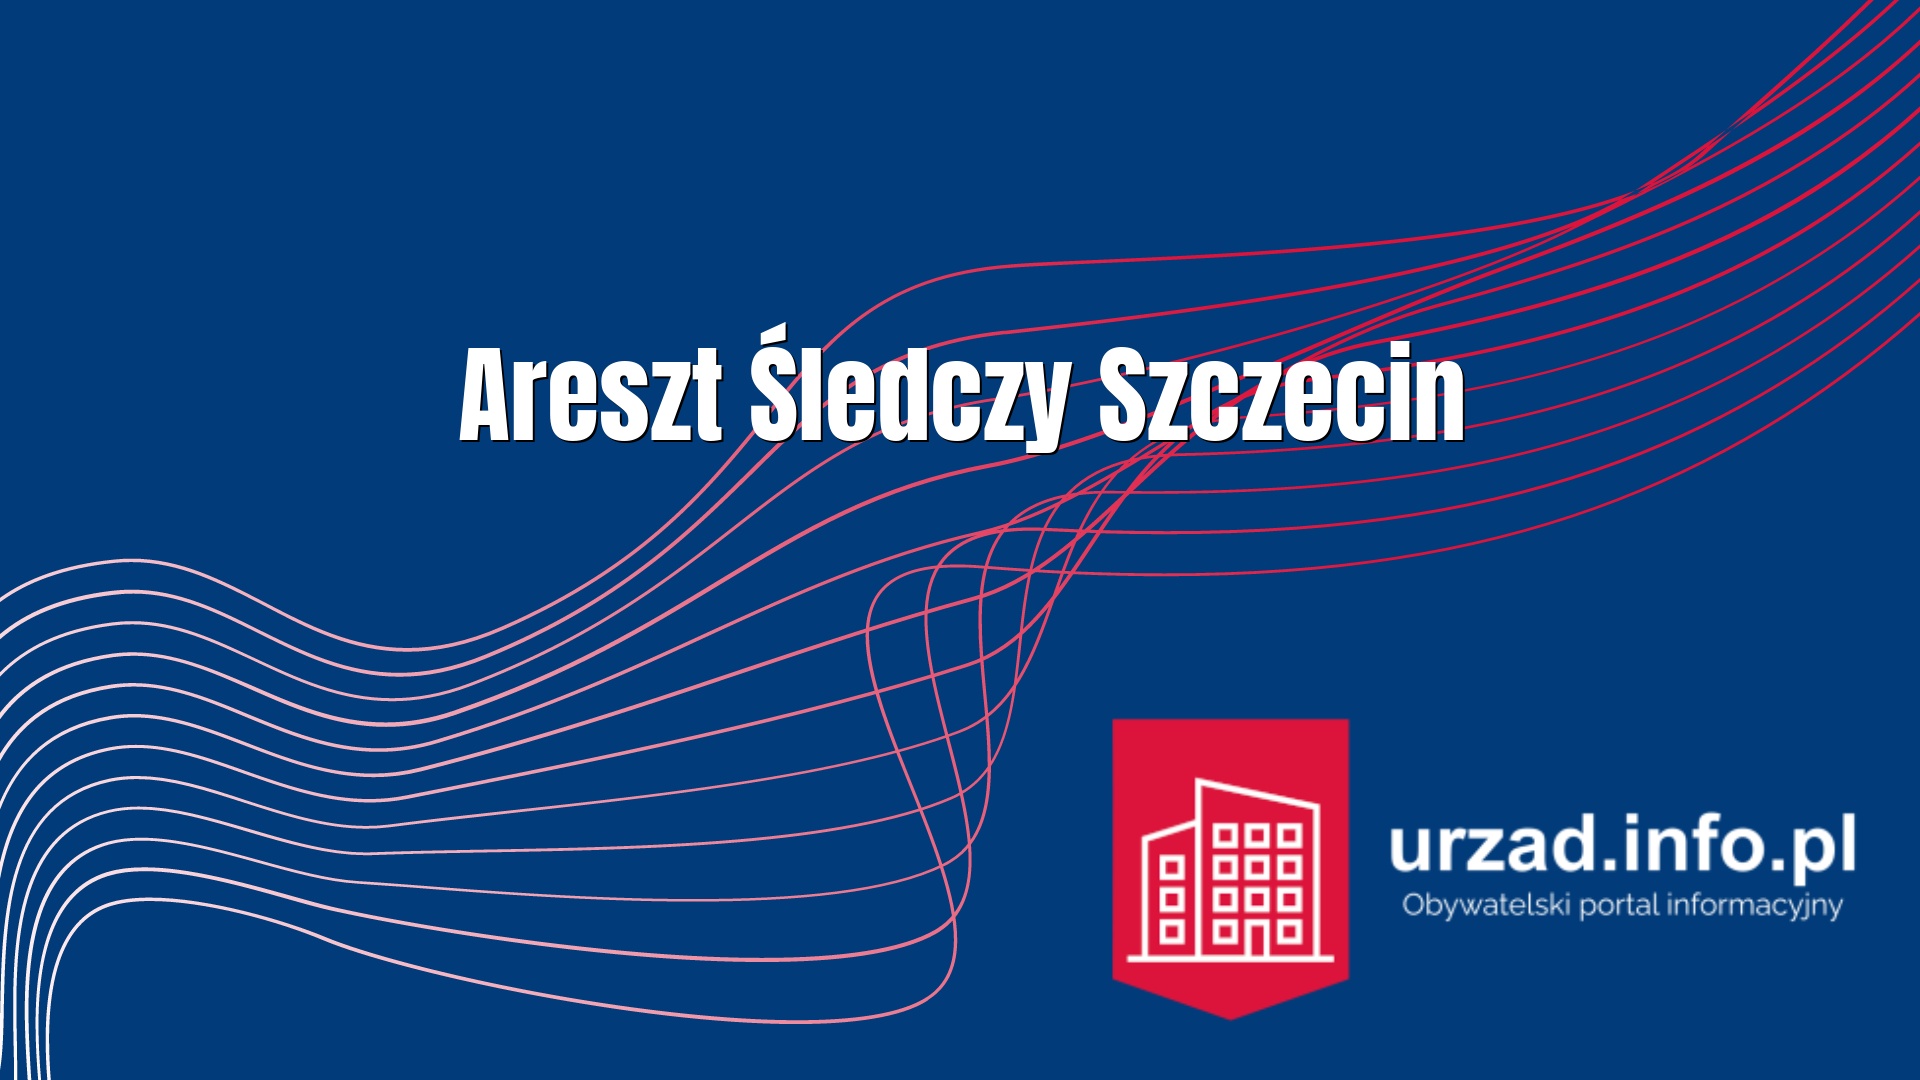 Areszt Śledczy Szczecin - Areszt Śledczy w Śzczecinie